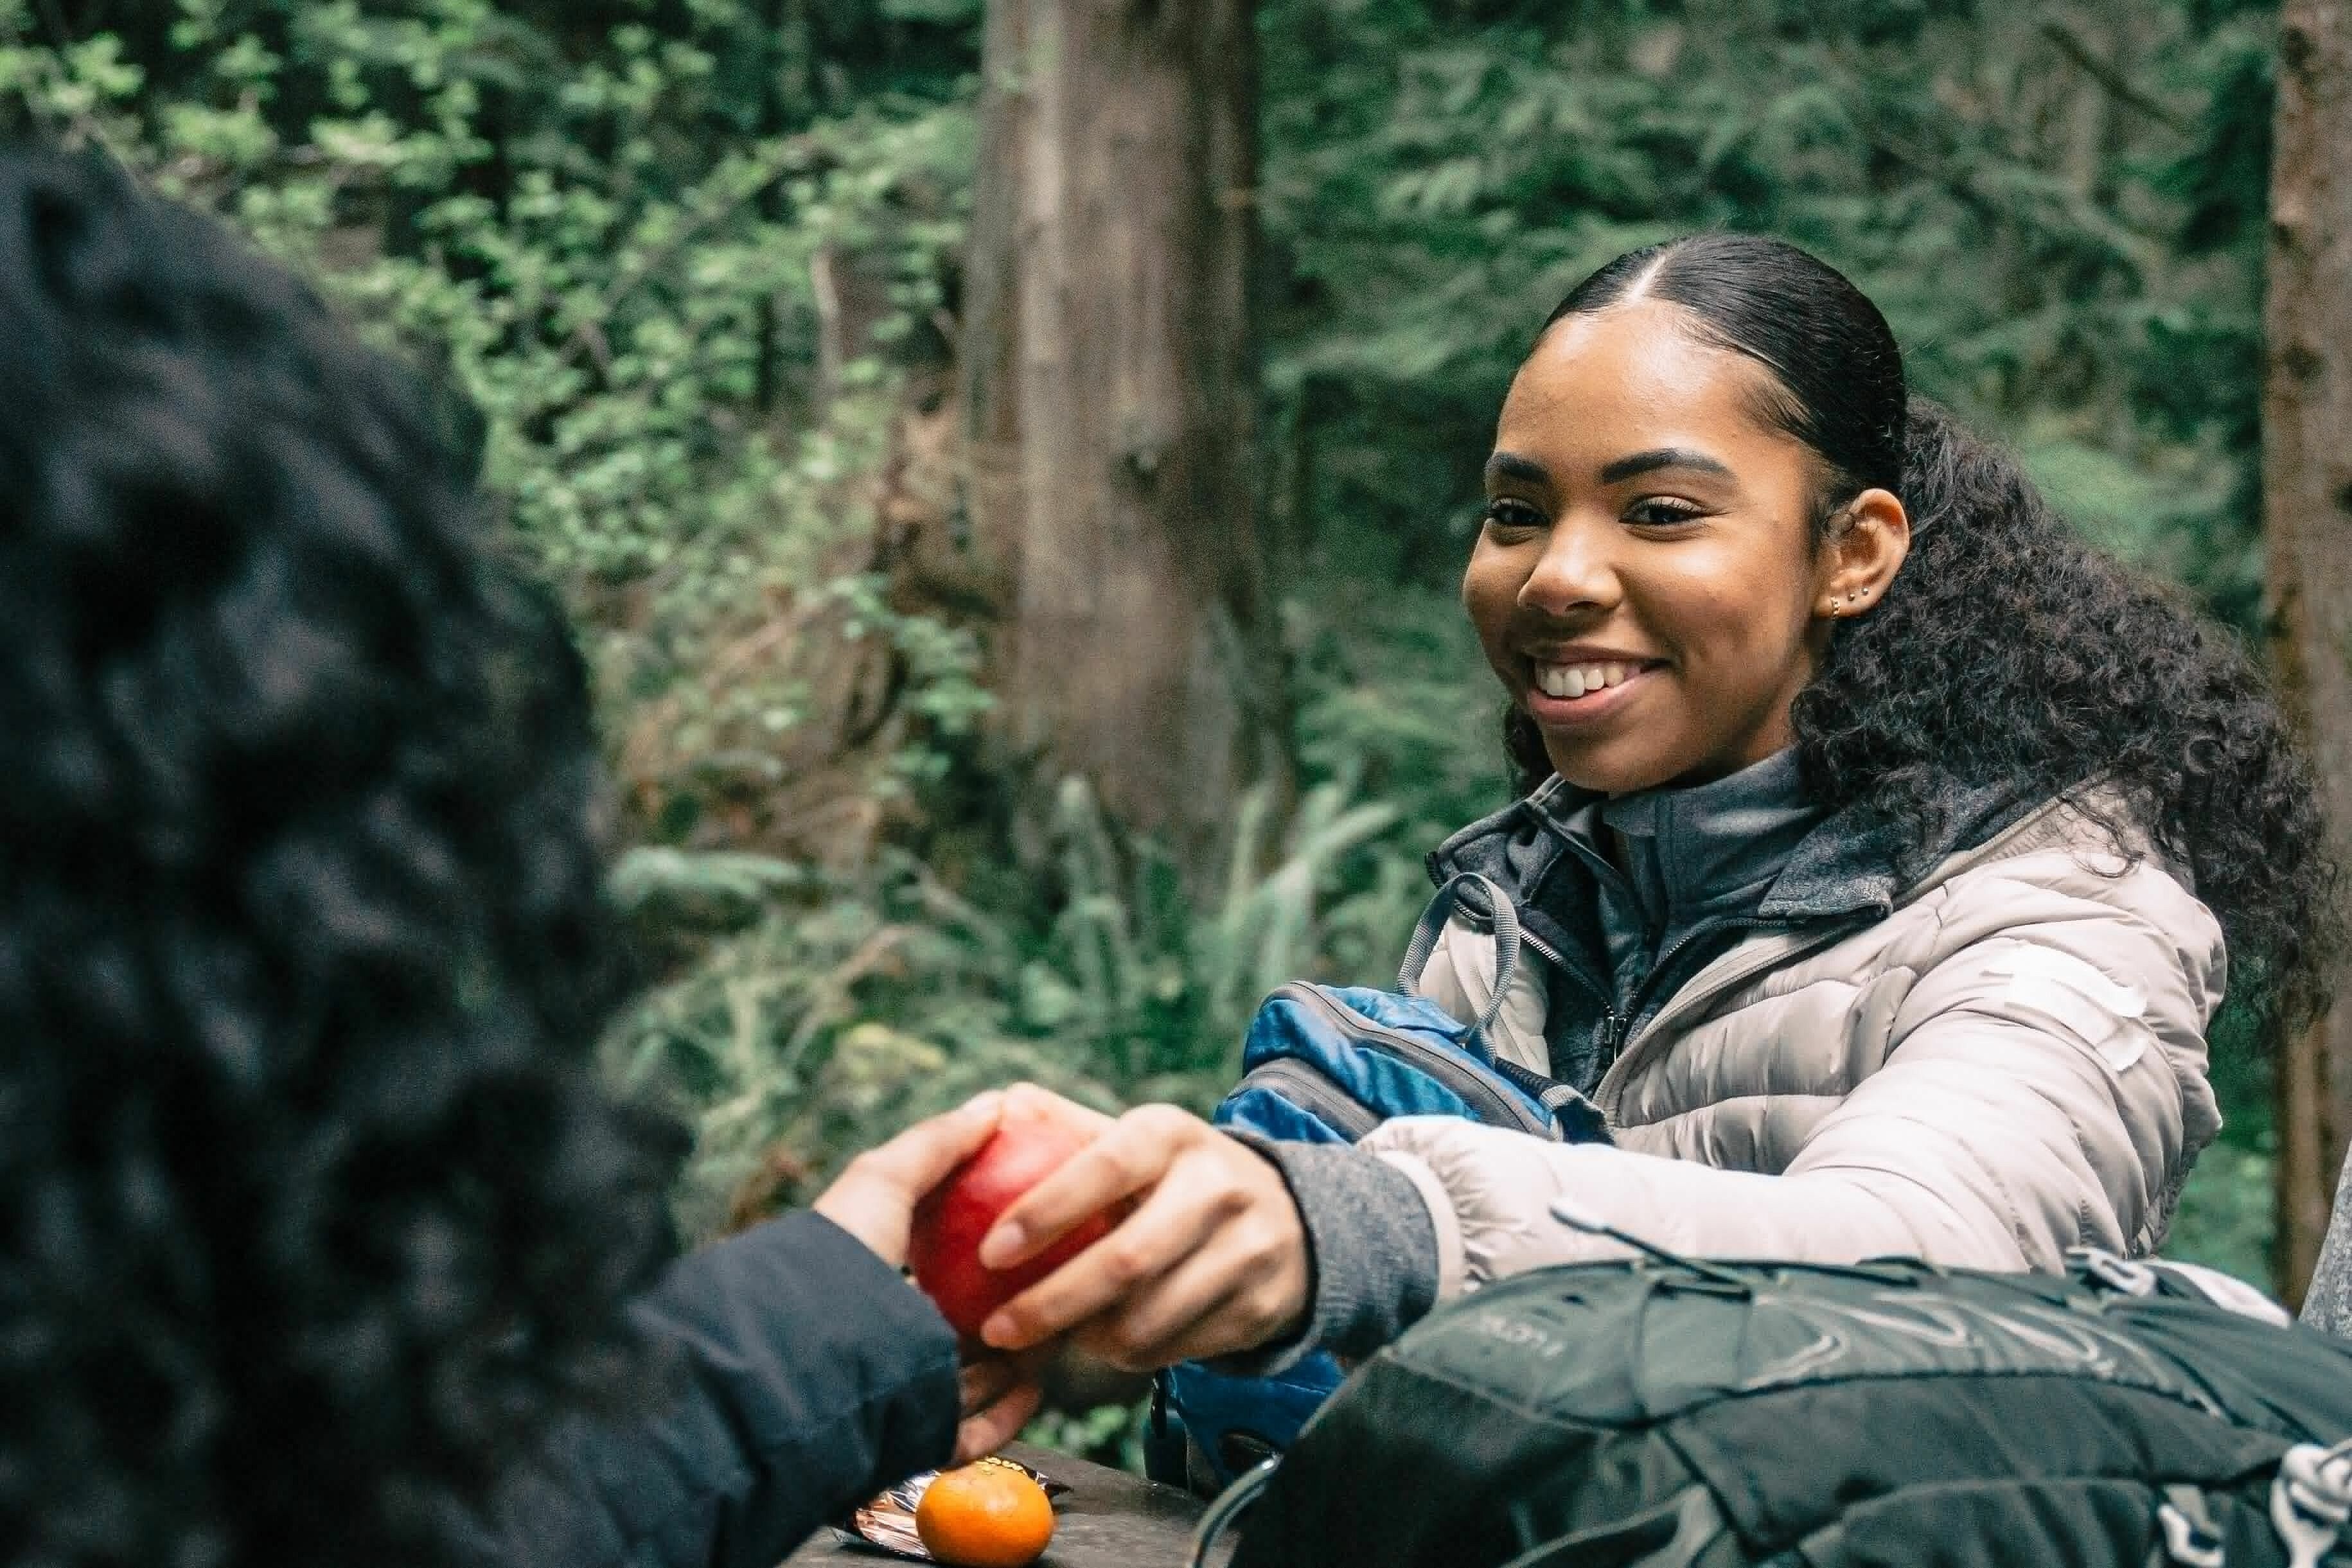 Eine junge Frau mit lockigen, schwarzen Haaren nimmt im Wald grinsend einen Apfel entgegen von einer Person mit schwarzen Locken. 